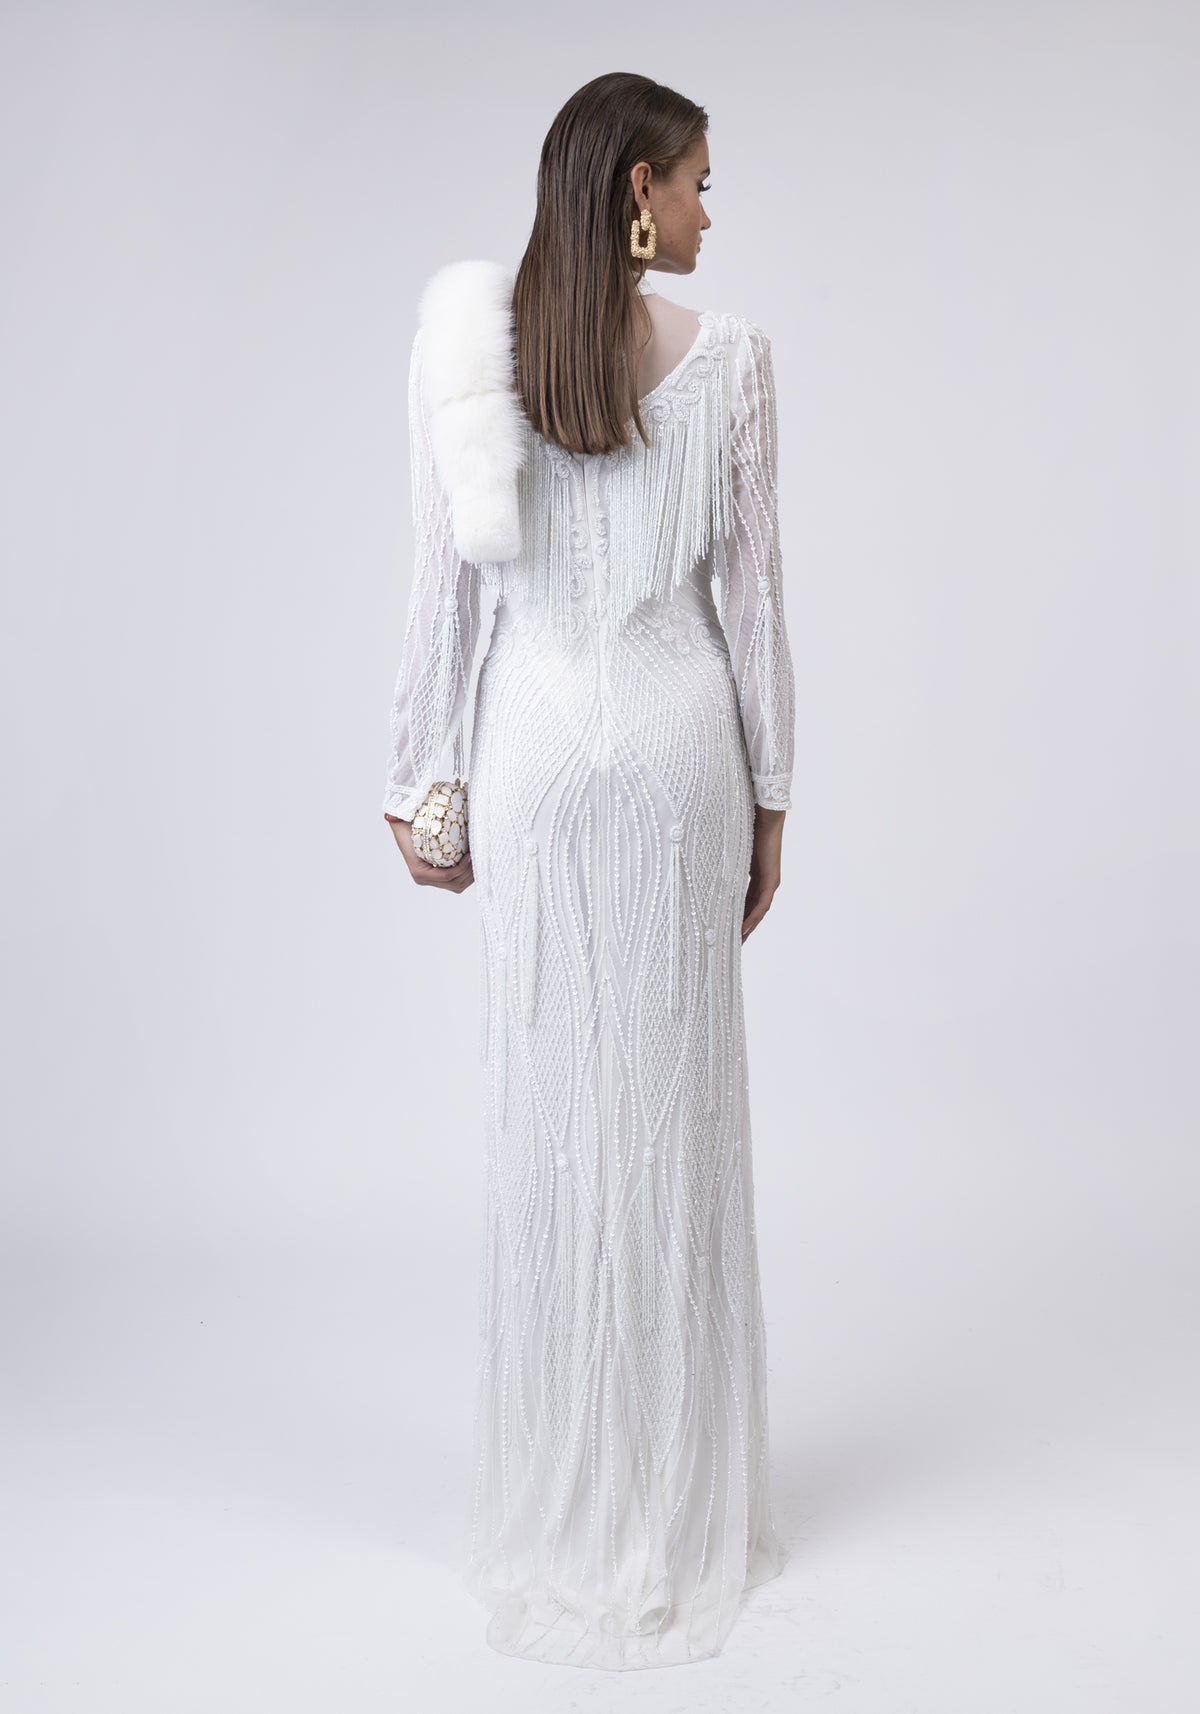 White beaded dress